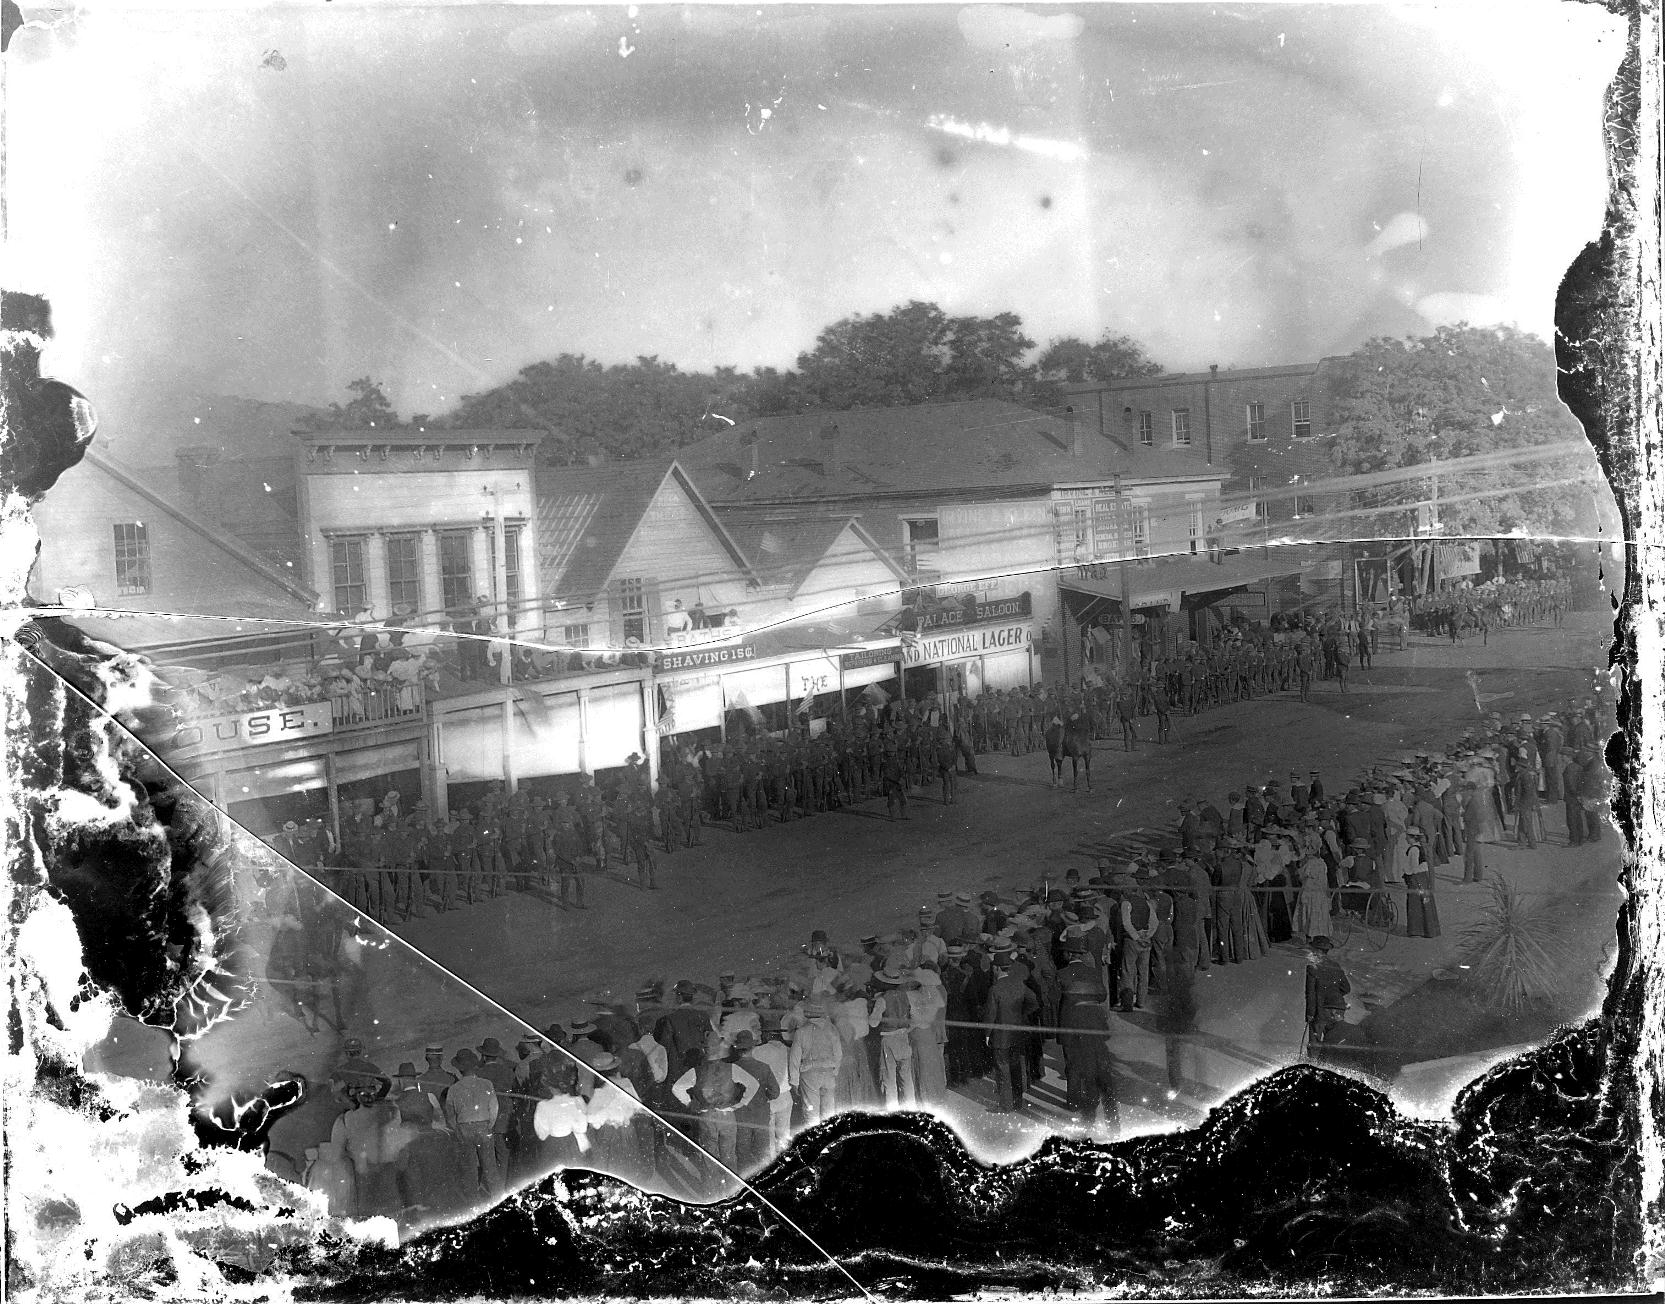 Ukiah Parade, circa 1895